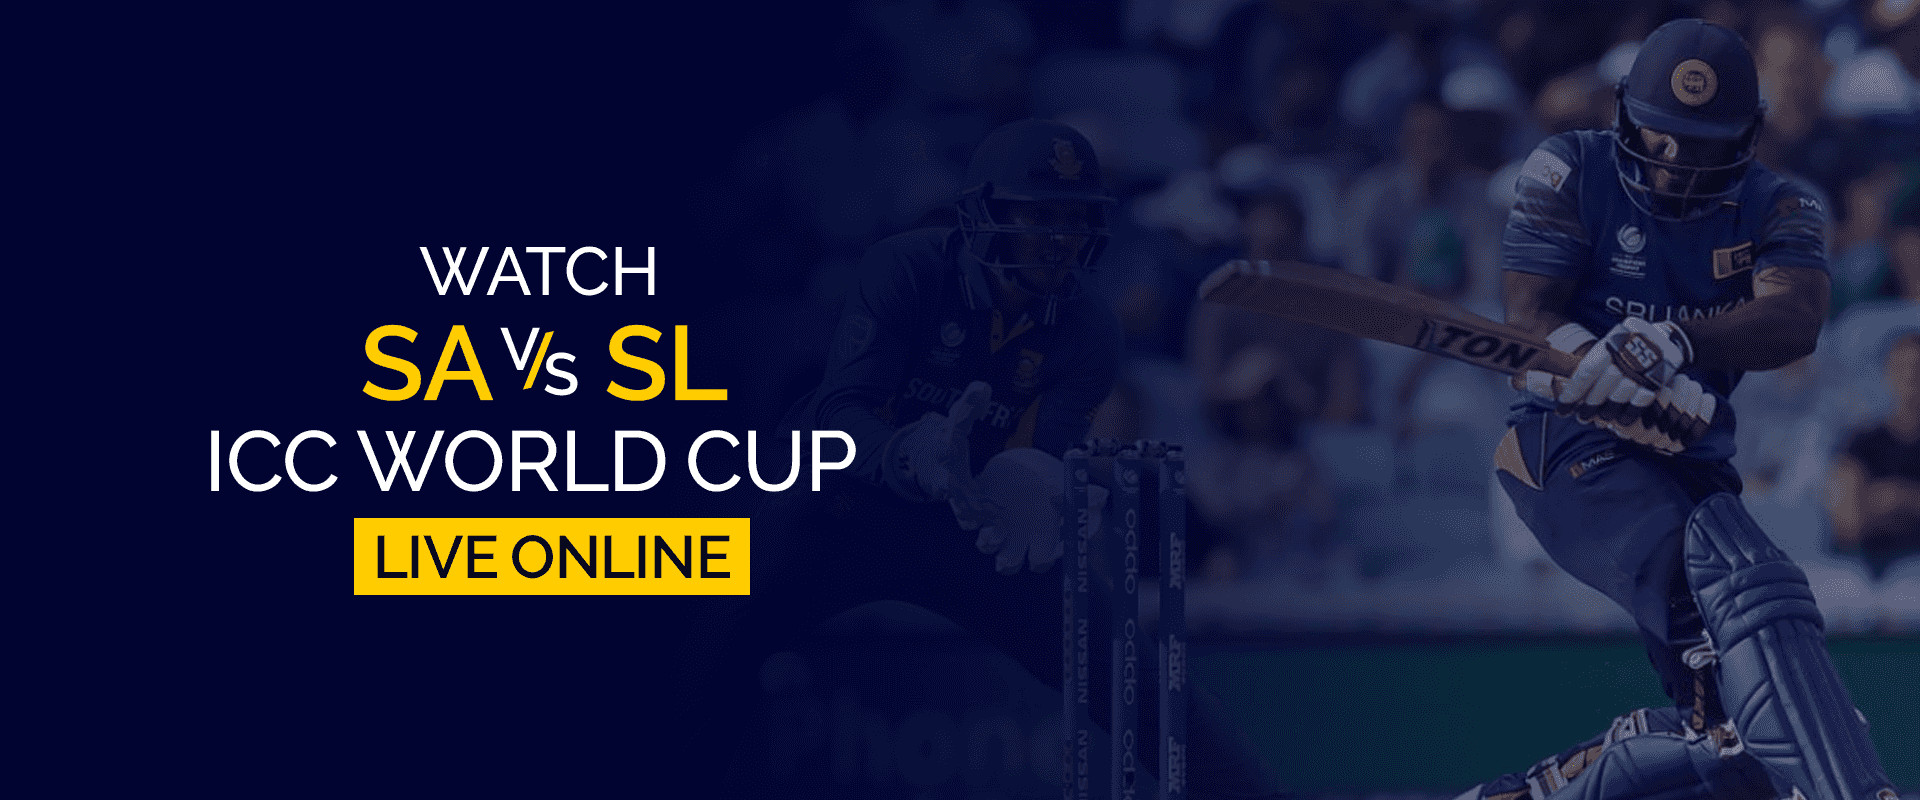 شاهد SA vs SL ICC كأس العالم مباشرة عبر الإنترنت